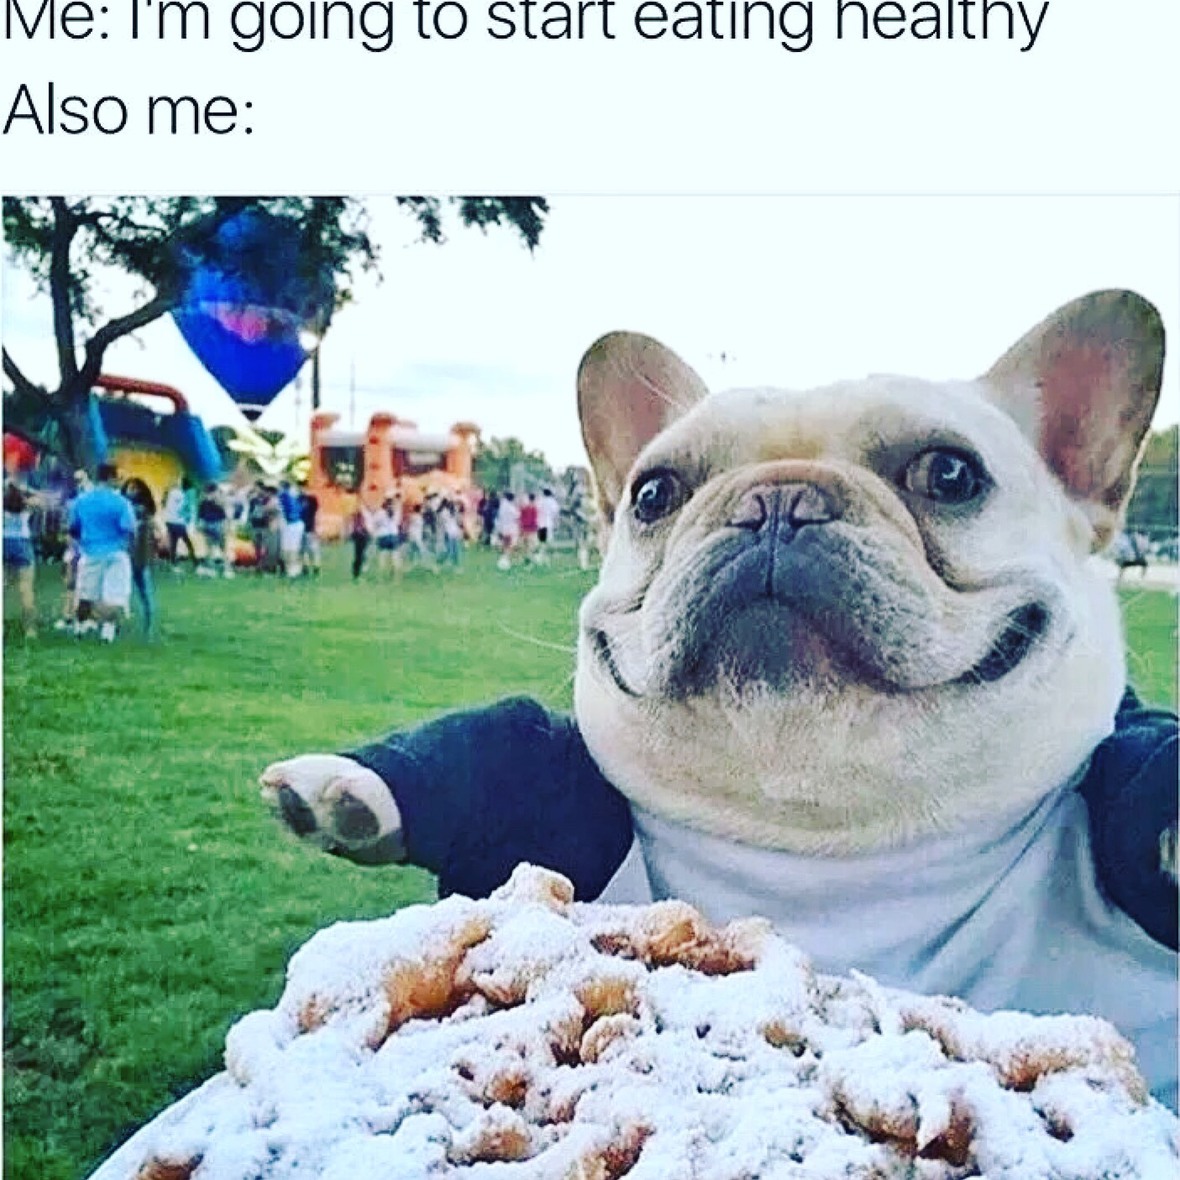 Funny Fat Dog Memes